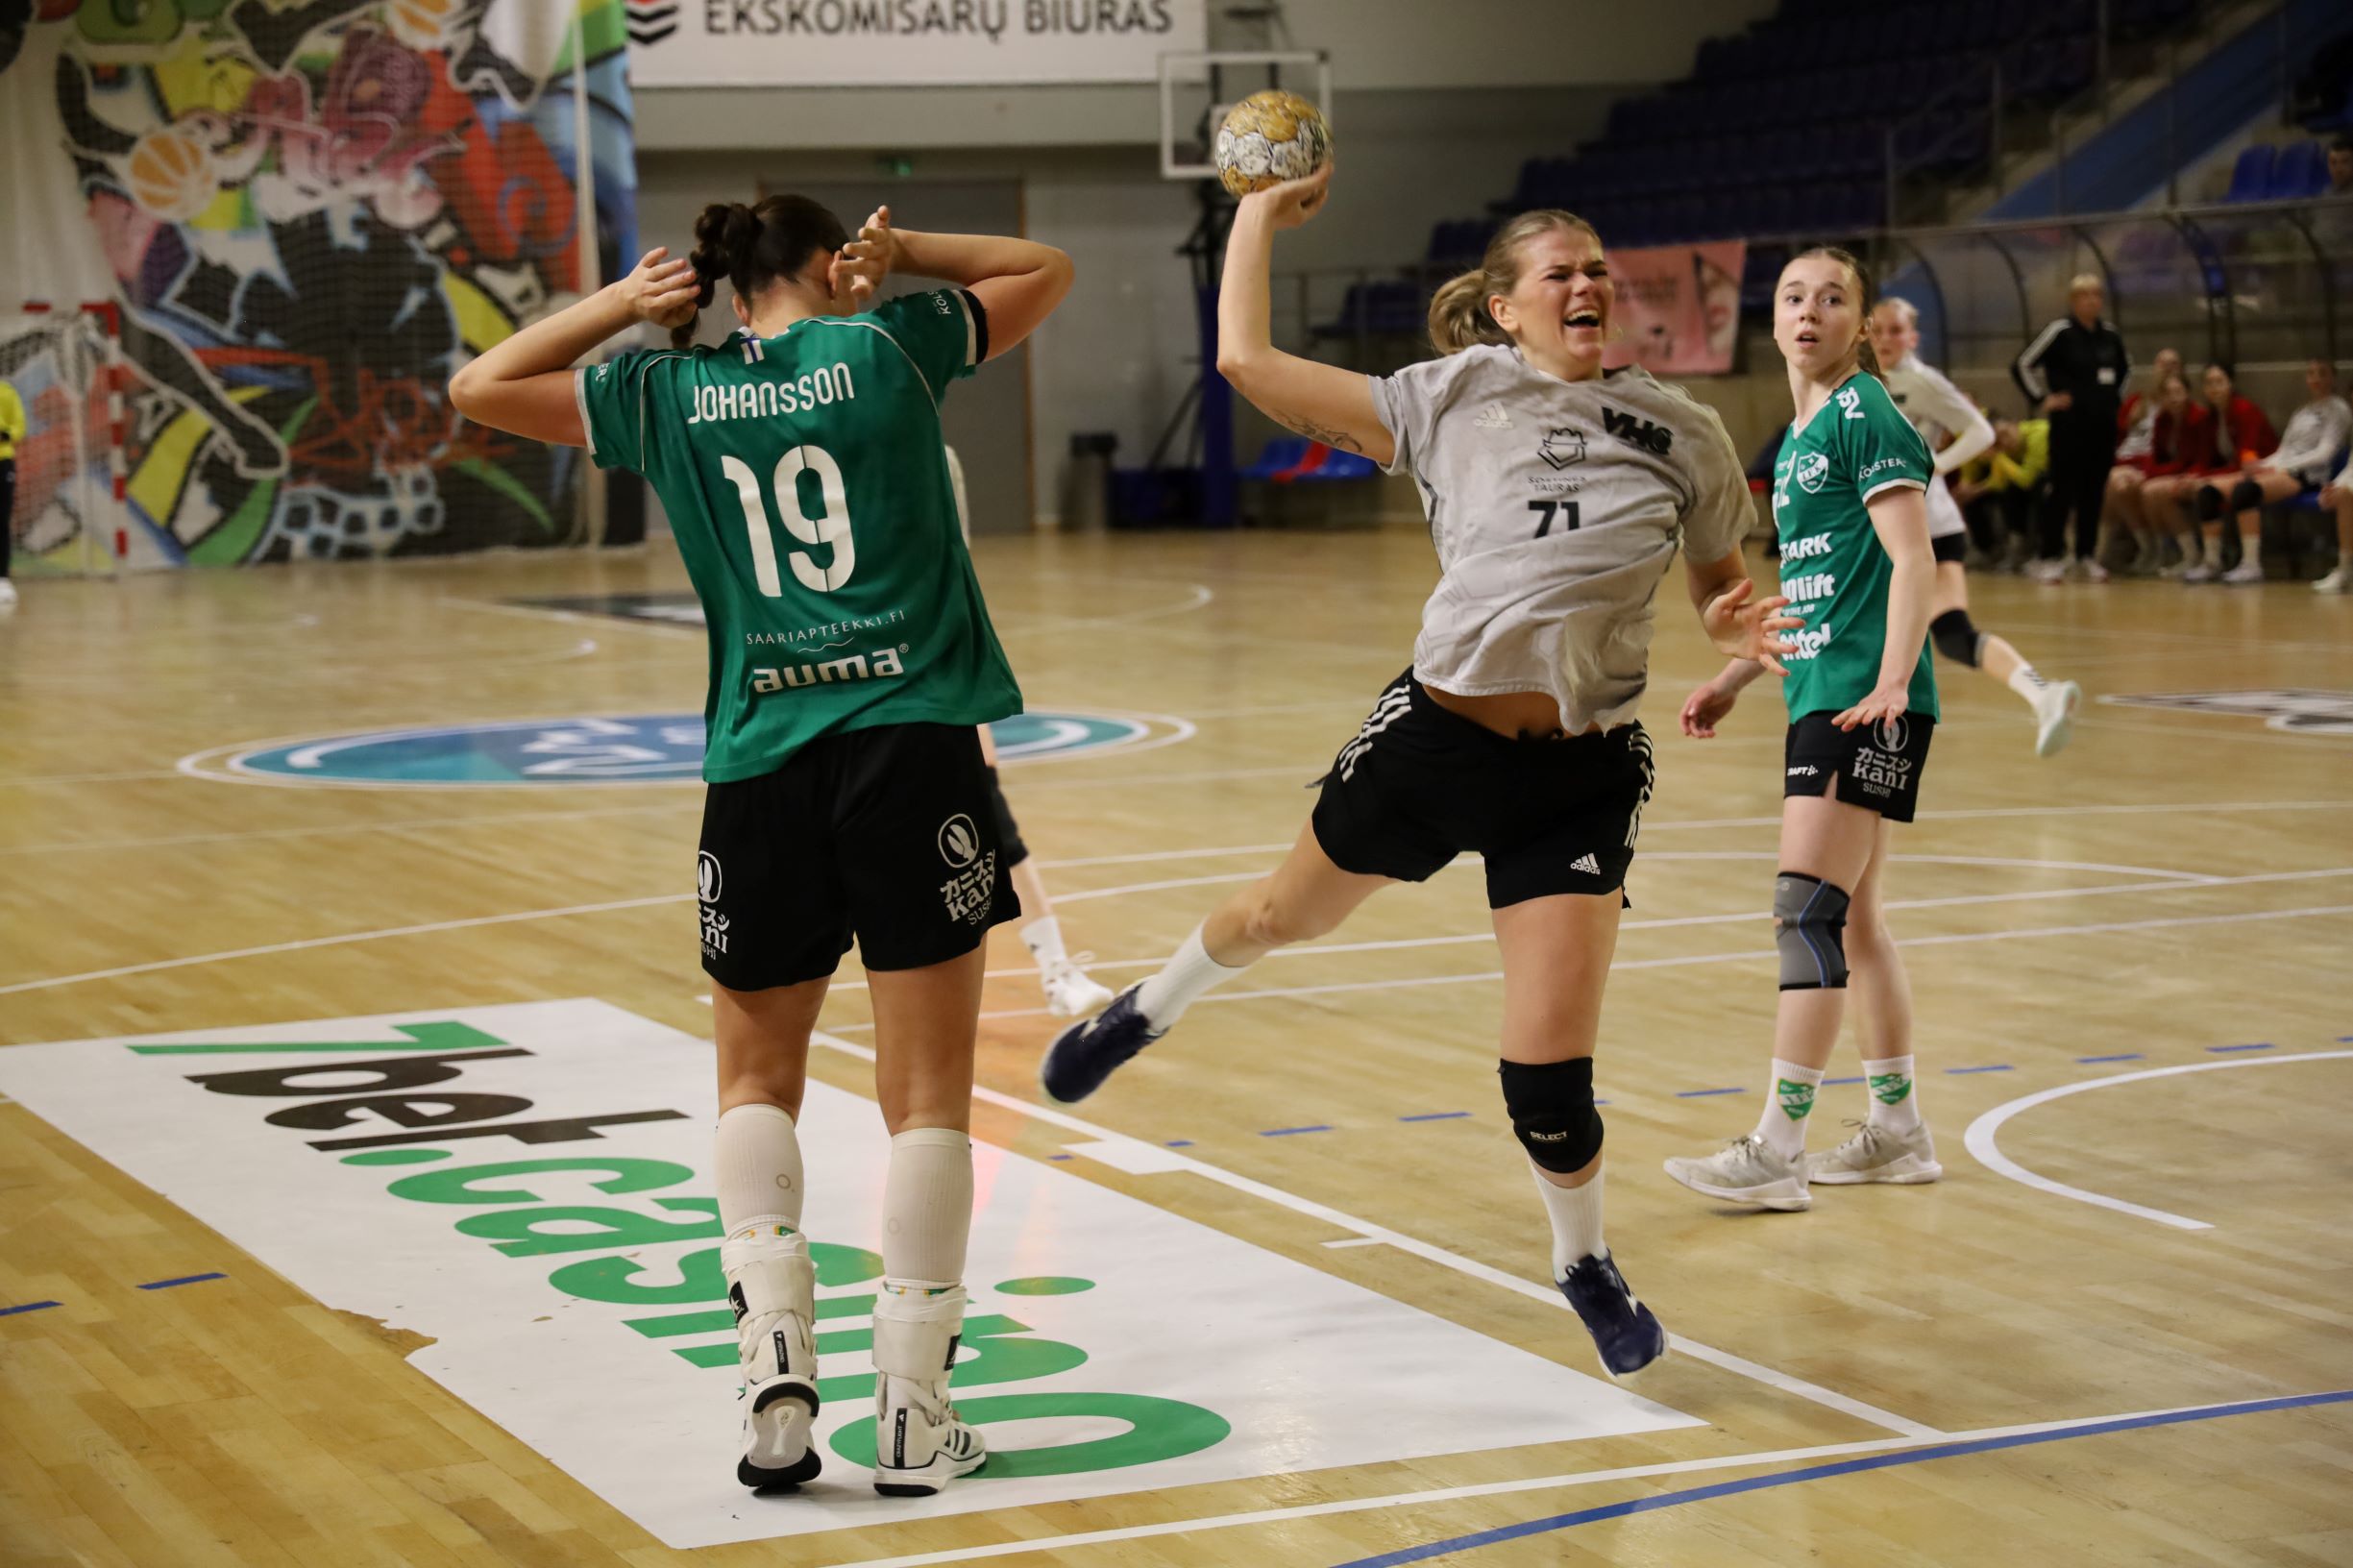 Baltijos jūros rankinio taurės turnyre dvi lietuvių komandos pateko tarp prizininkių